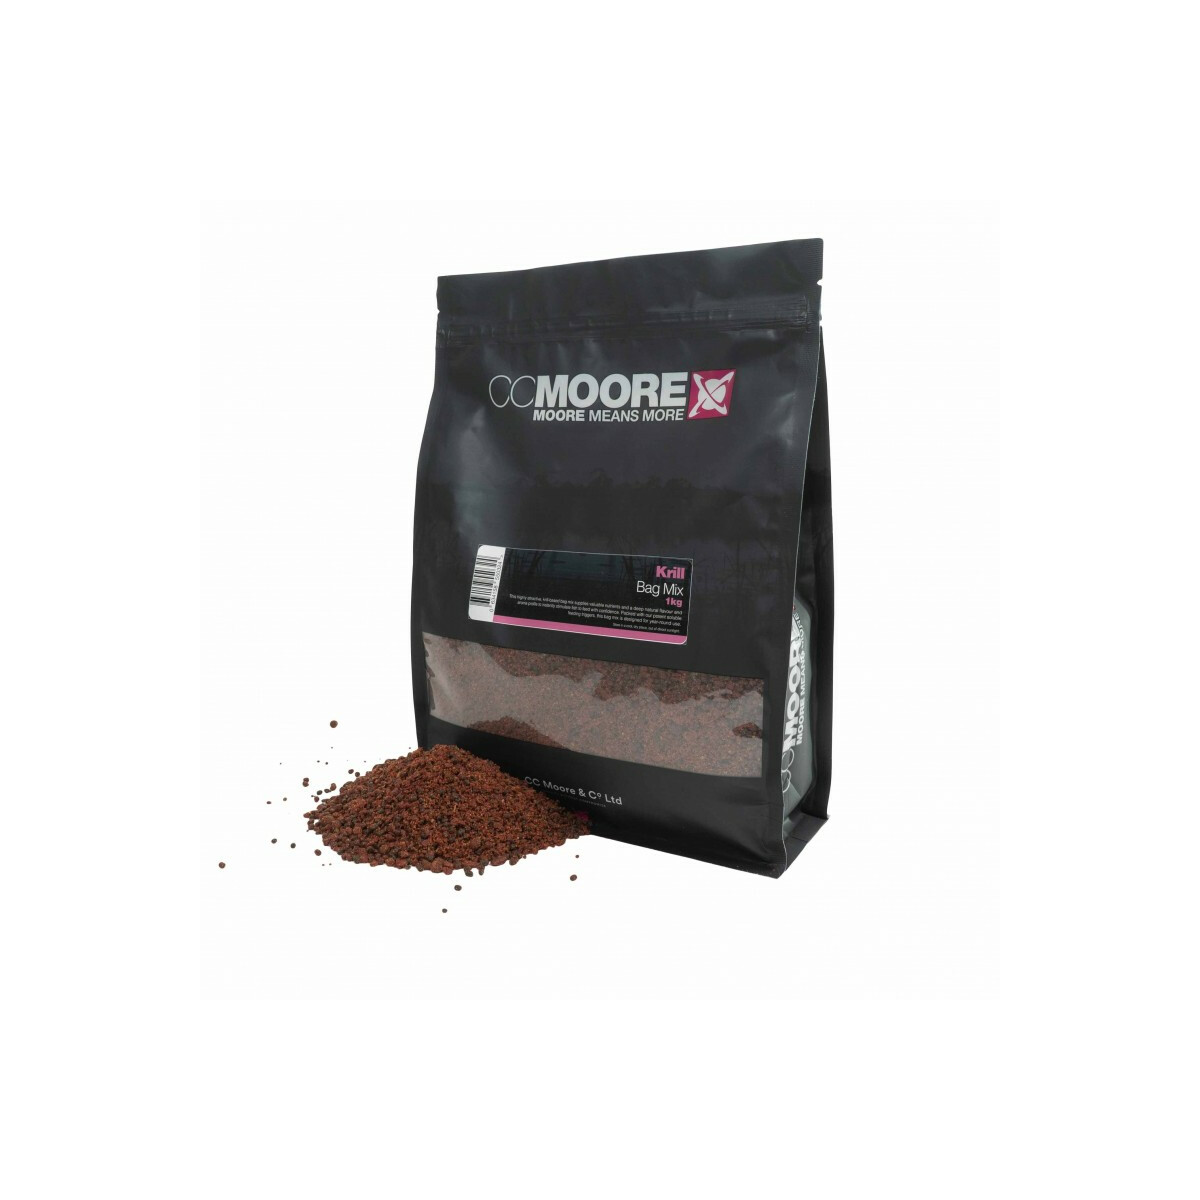 CC Moore Krill PVA Bag Mix - 1 Kg